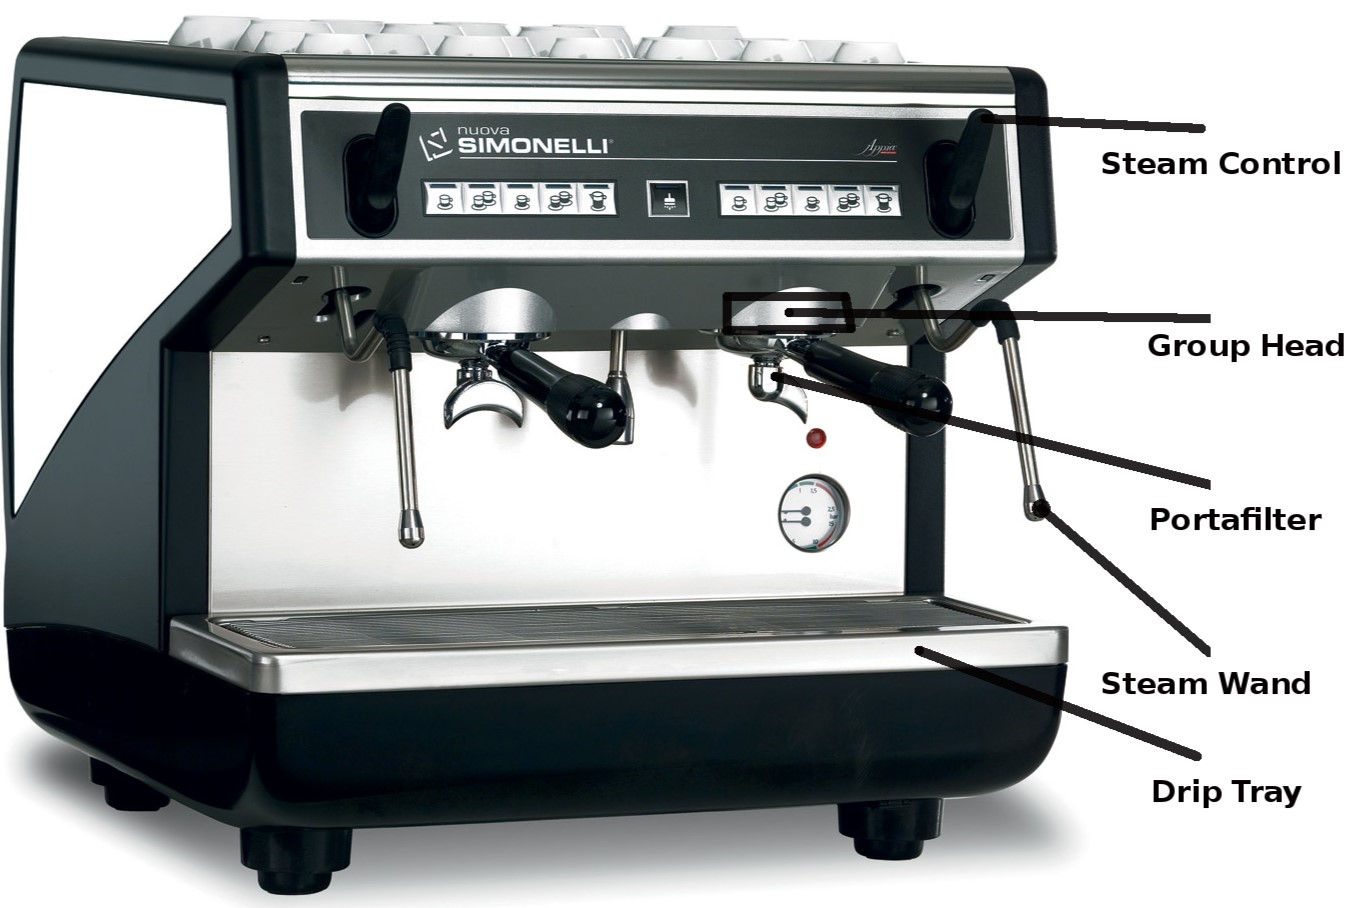  Mr. Coffee ECM91 Steam Espresso and Cappuccino Maker: Cappuccino  Machines: Home & Kitchen